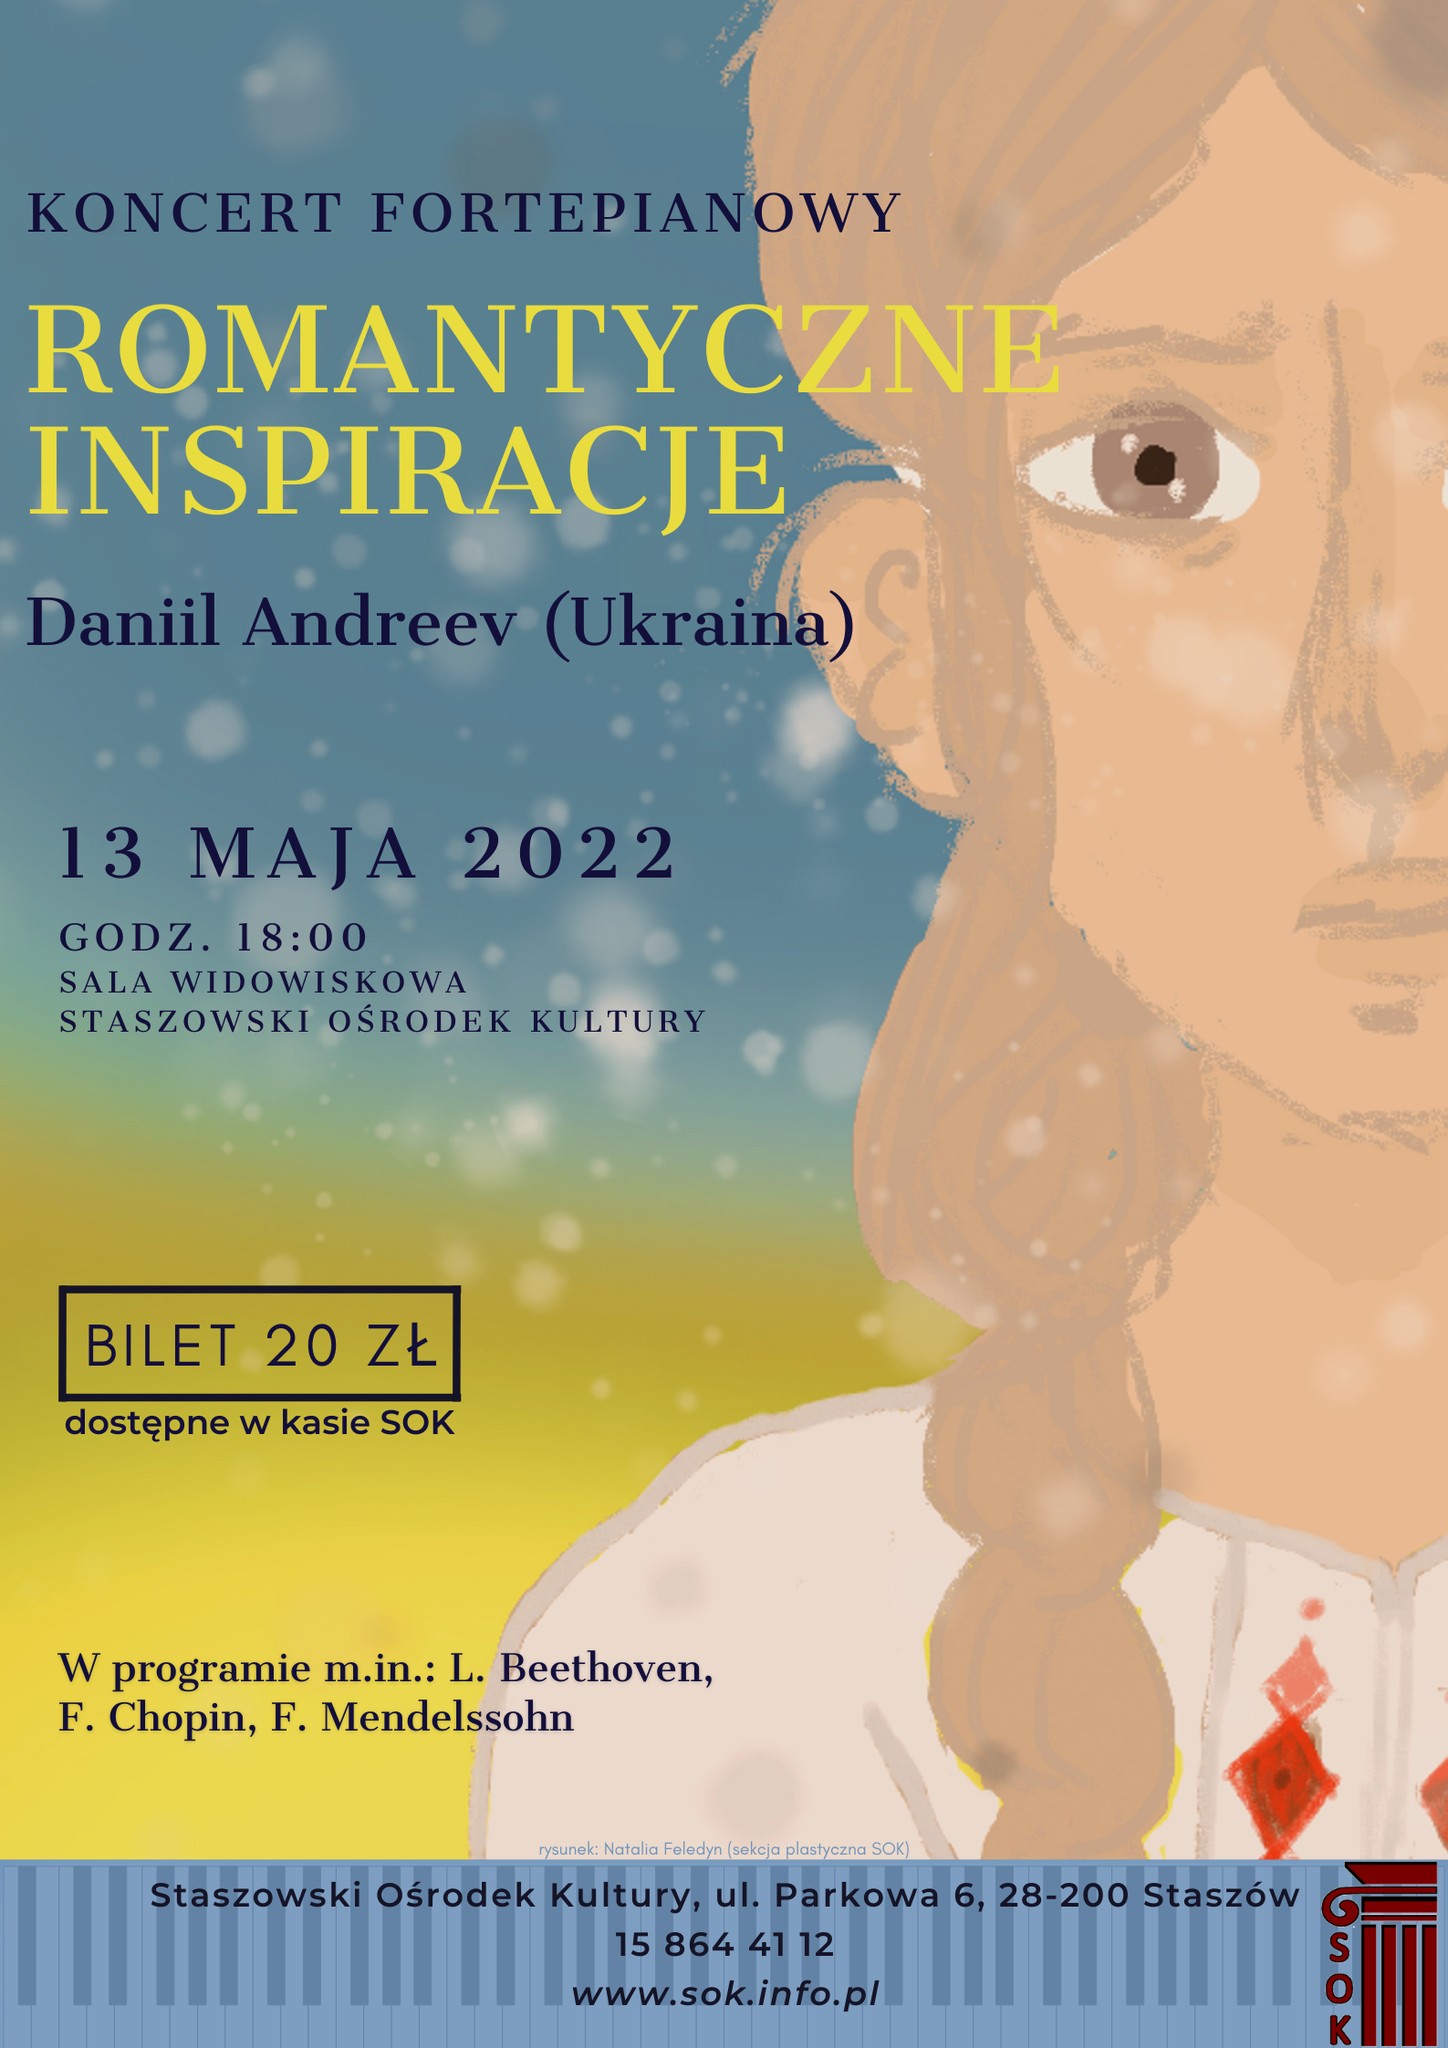 Plakat informacyjny: Koncert fortepianowy “Romantyczne inspiracje”  13 maja, godz. 18:00, Staszowski Ośrodek Kultury